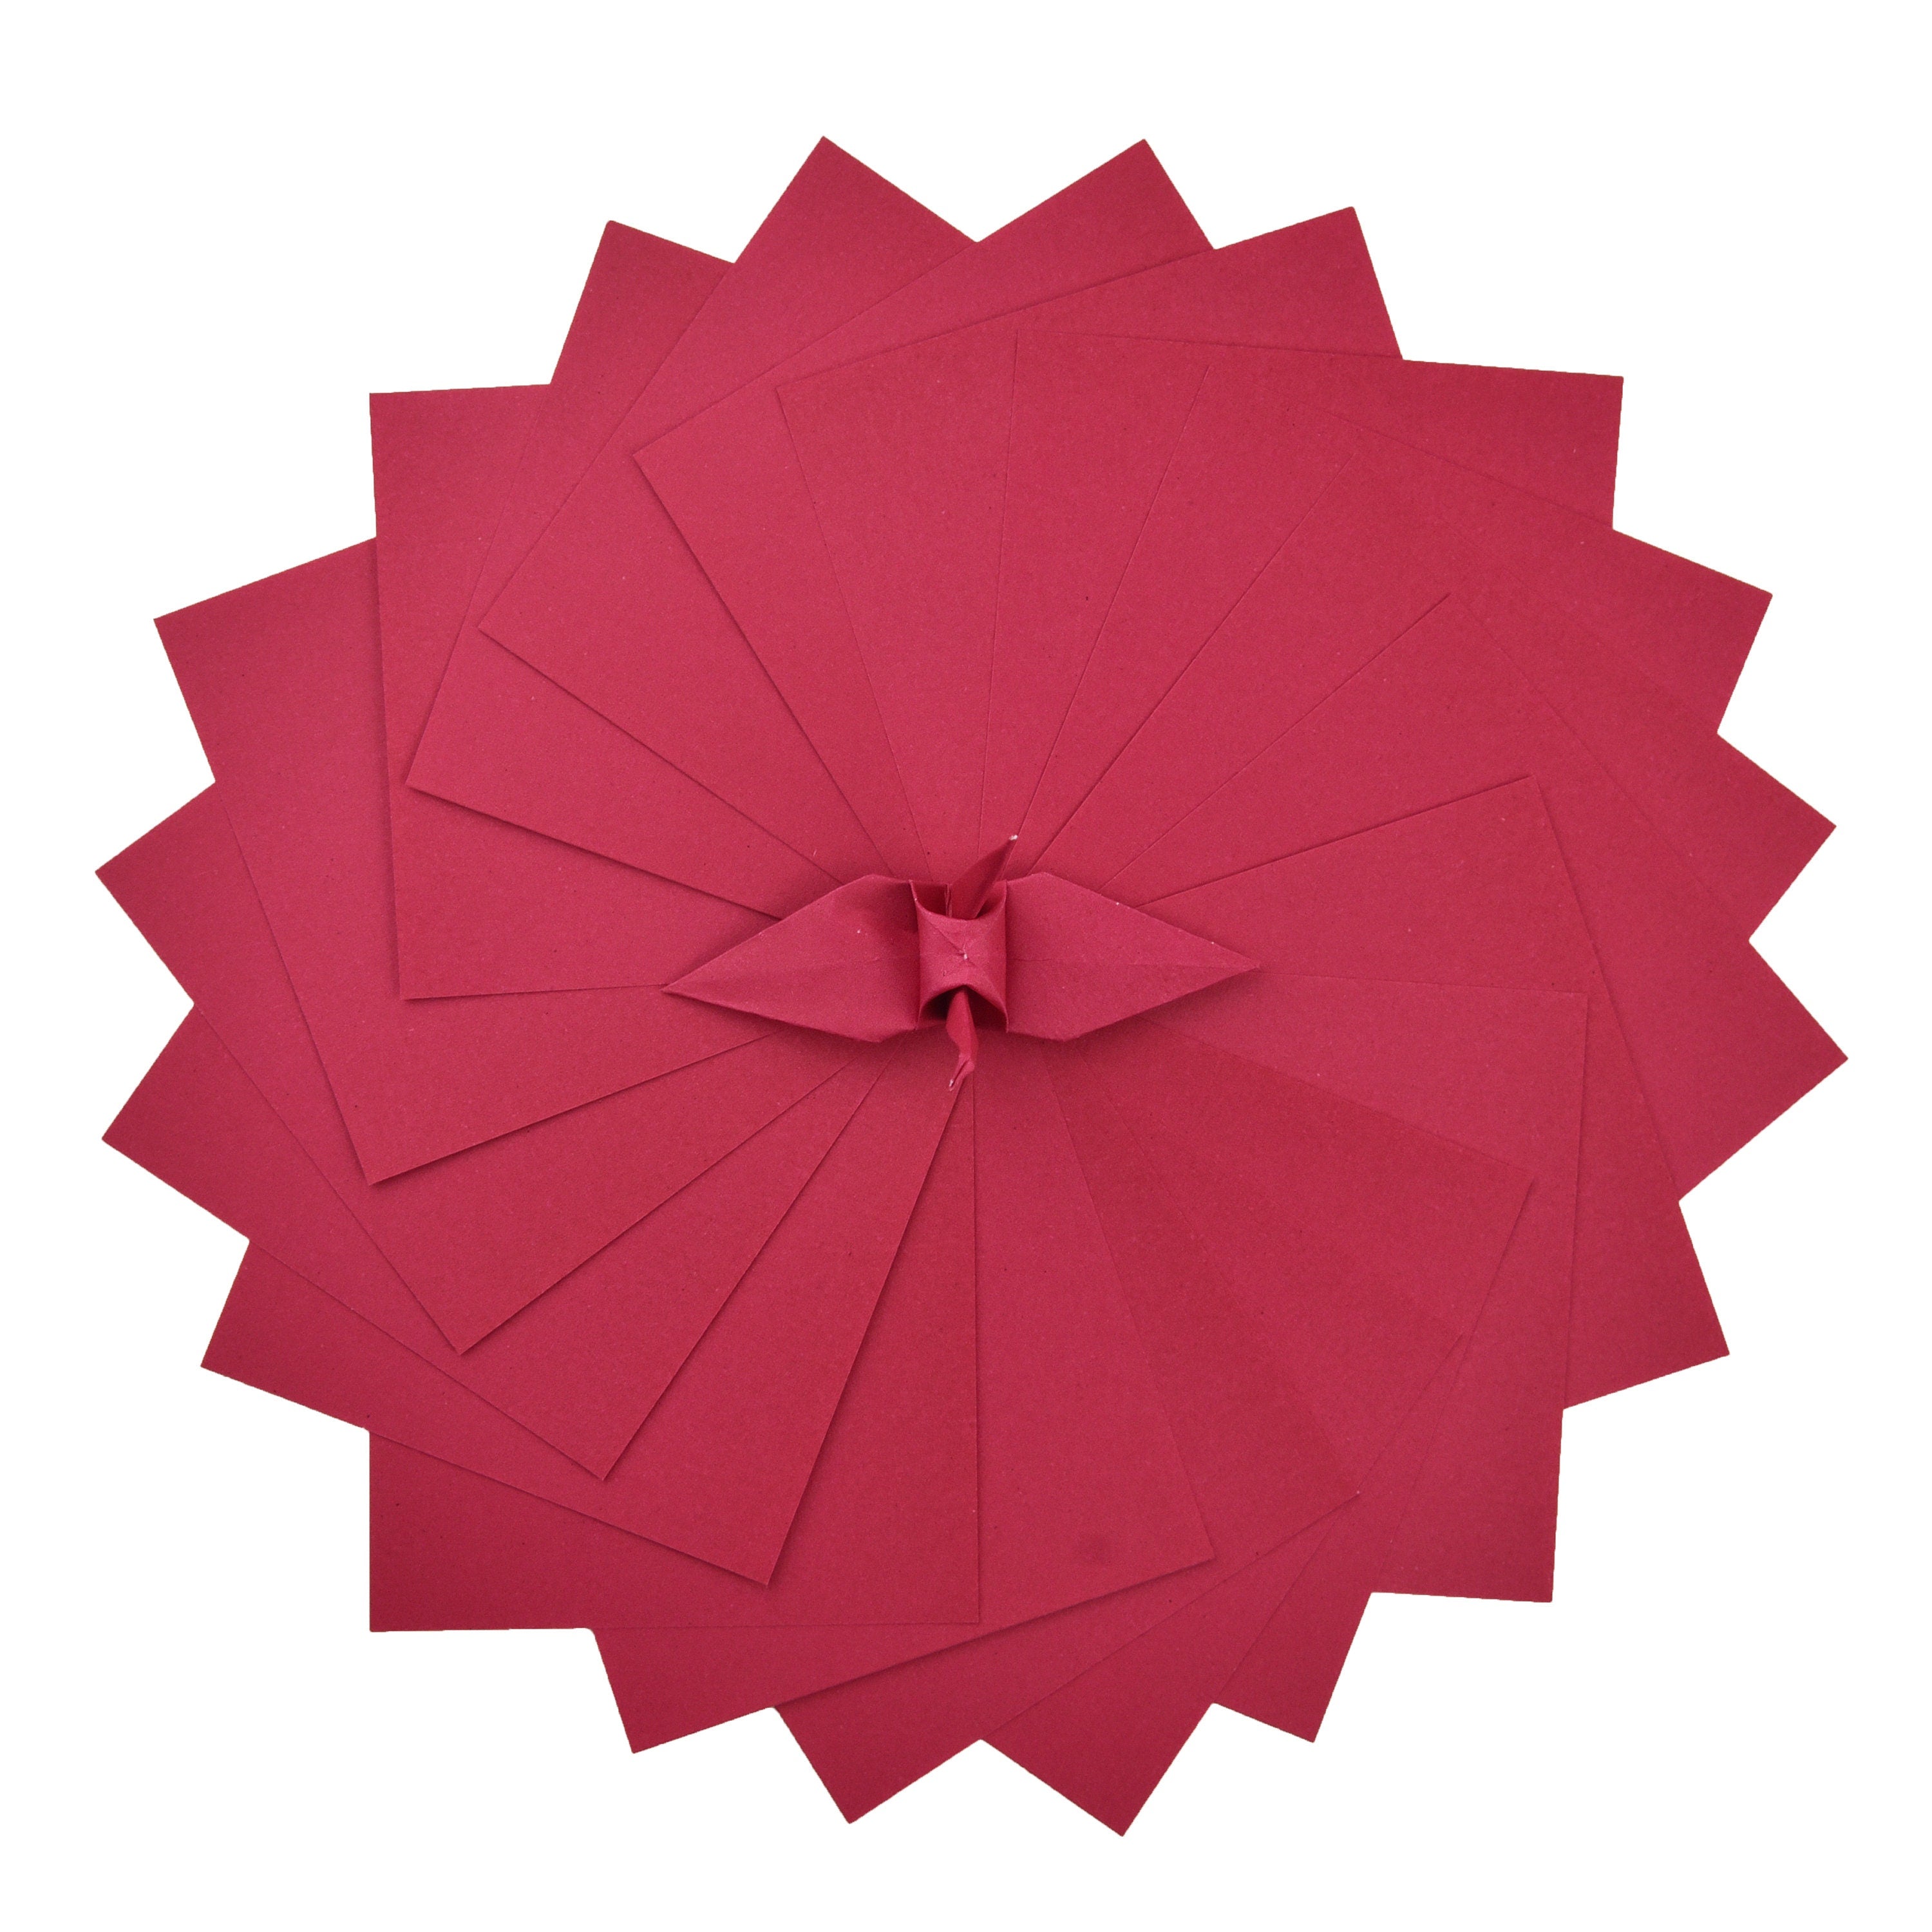 100 fogli di carta origami - 6x6 pollici - Confezione di carta quadrata per piegare, gru origami e decorazioni - S15